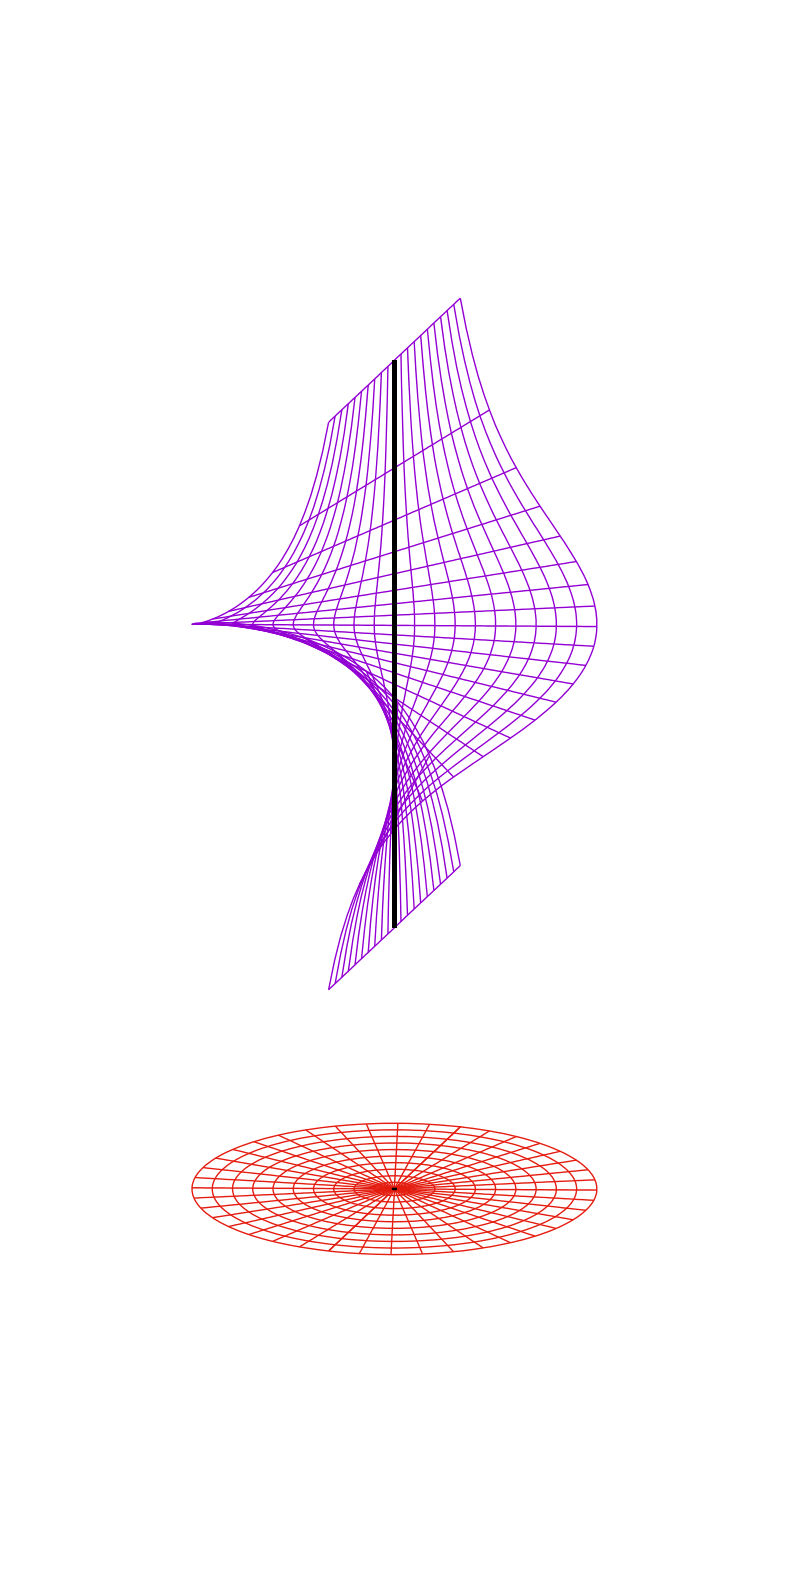 Aspecto local de una transformación de Cremona (z=y/x), el punto central (abajo) se transforma en la recta vertical (arriba).